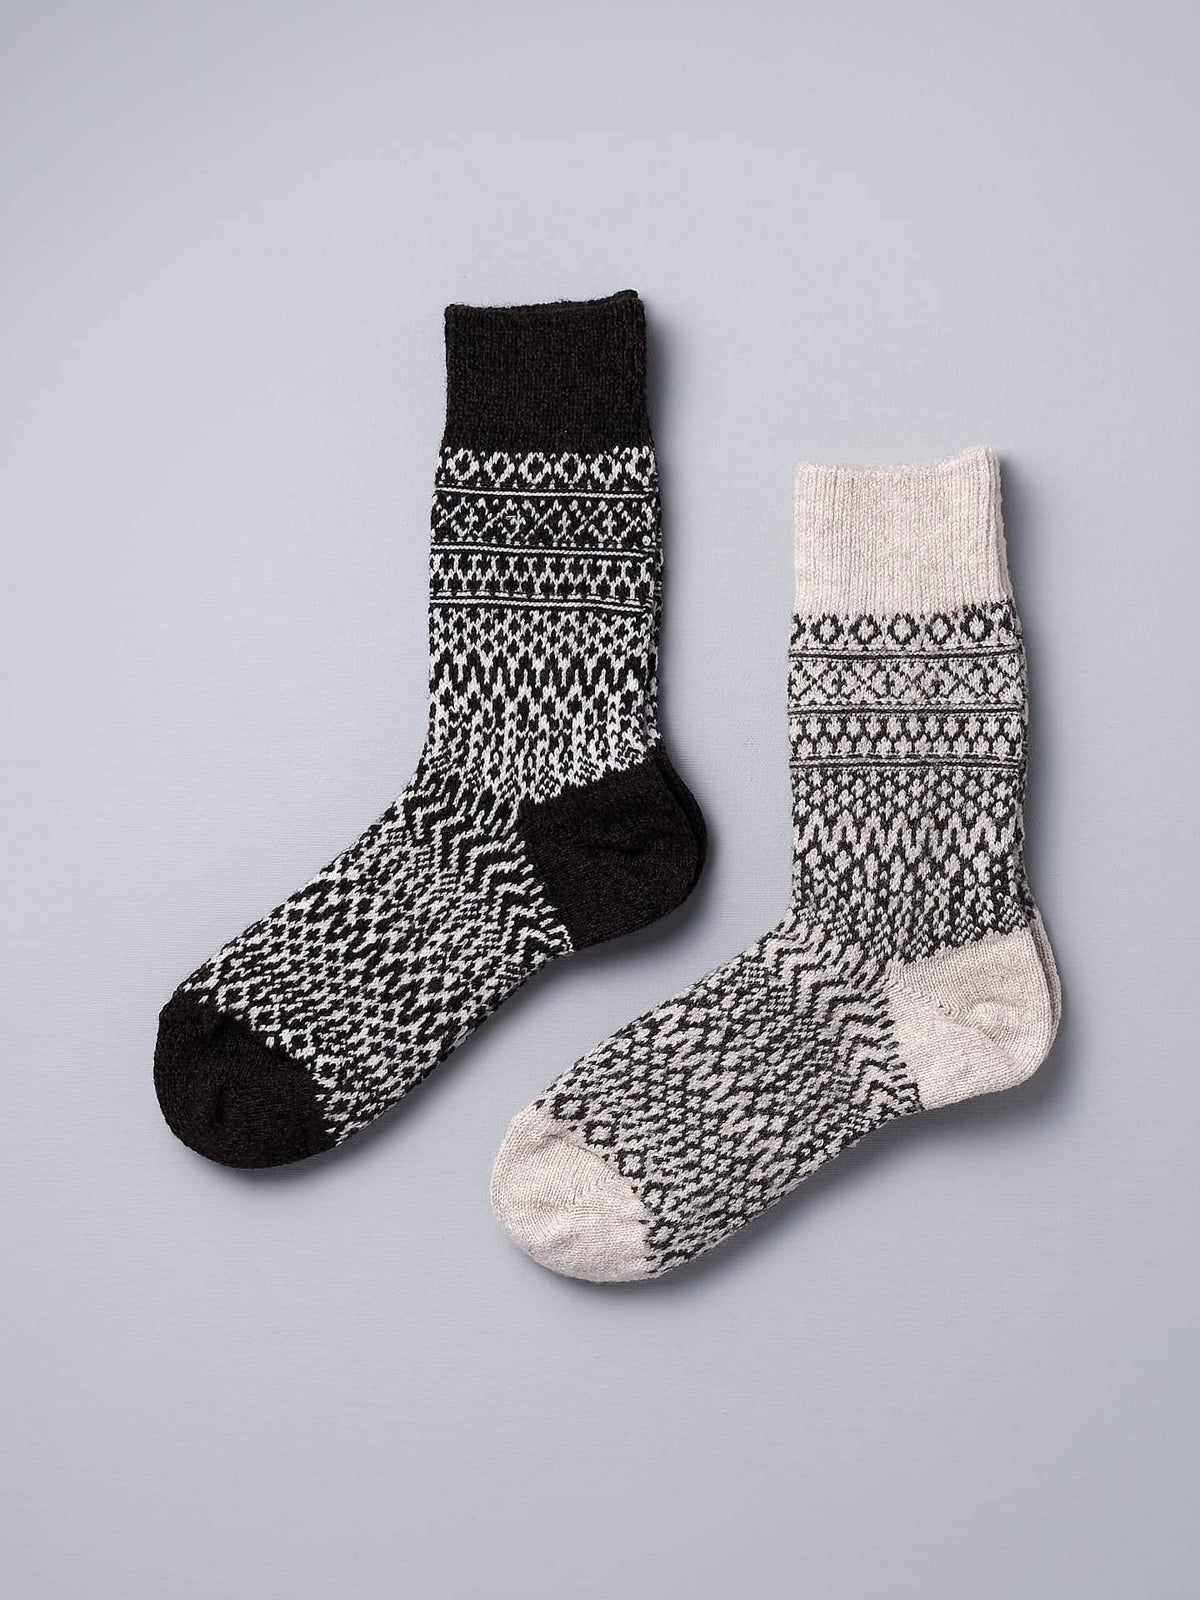 A pair of Oslo Wool Jacquard Socks - Coffee by Nishiguchi Kutsushita on a grey background.